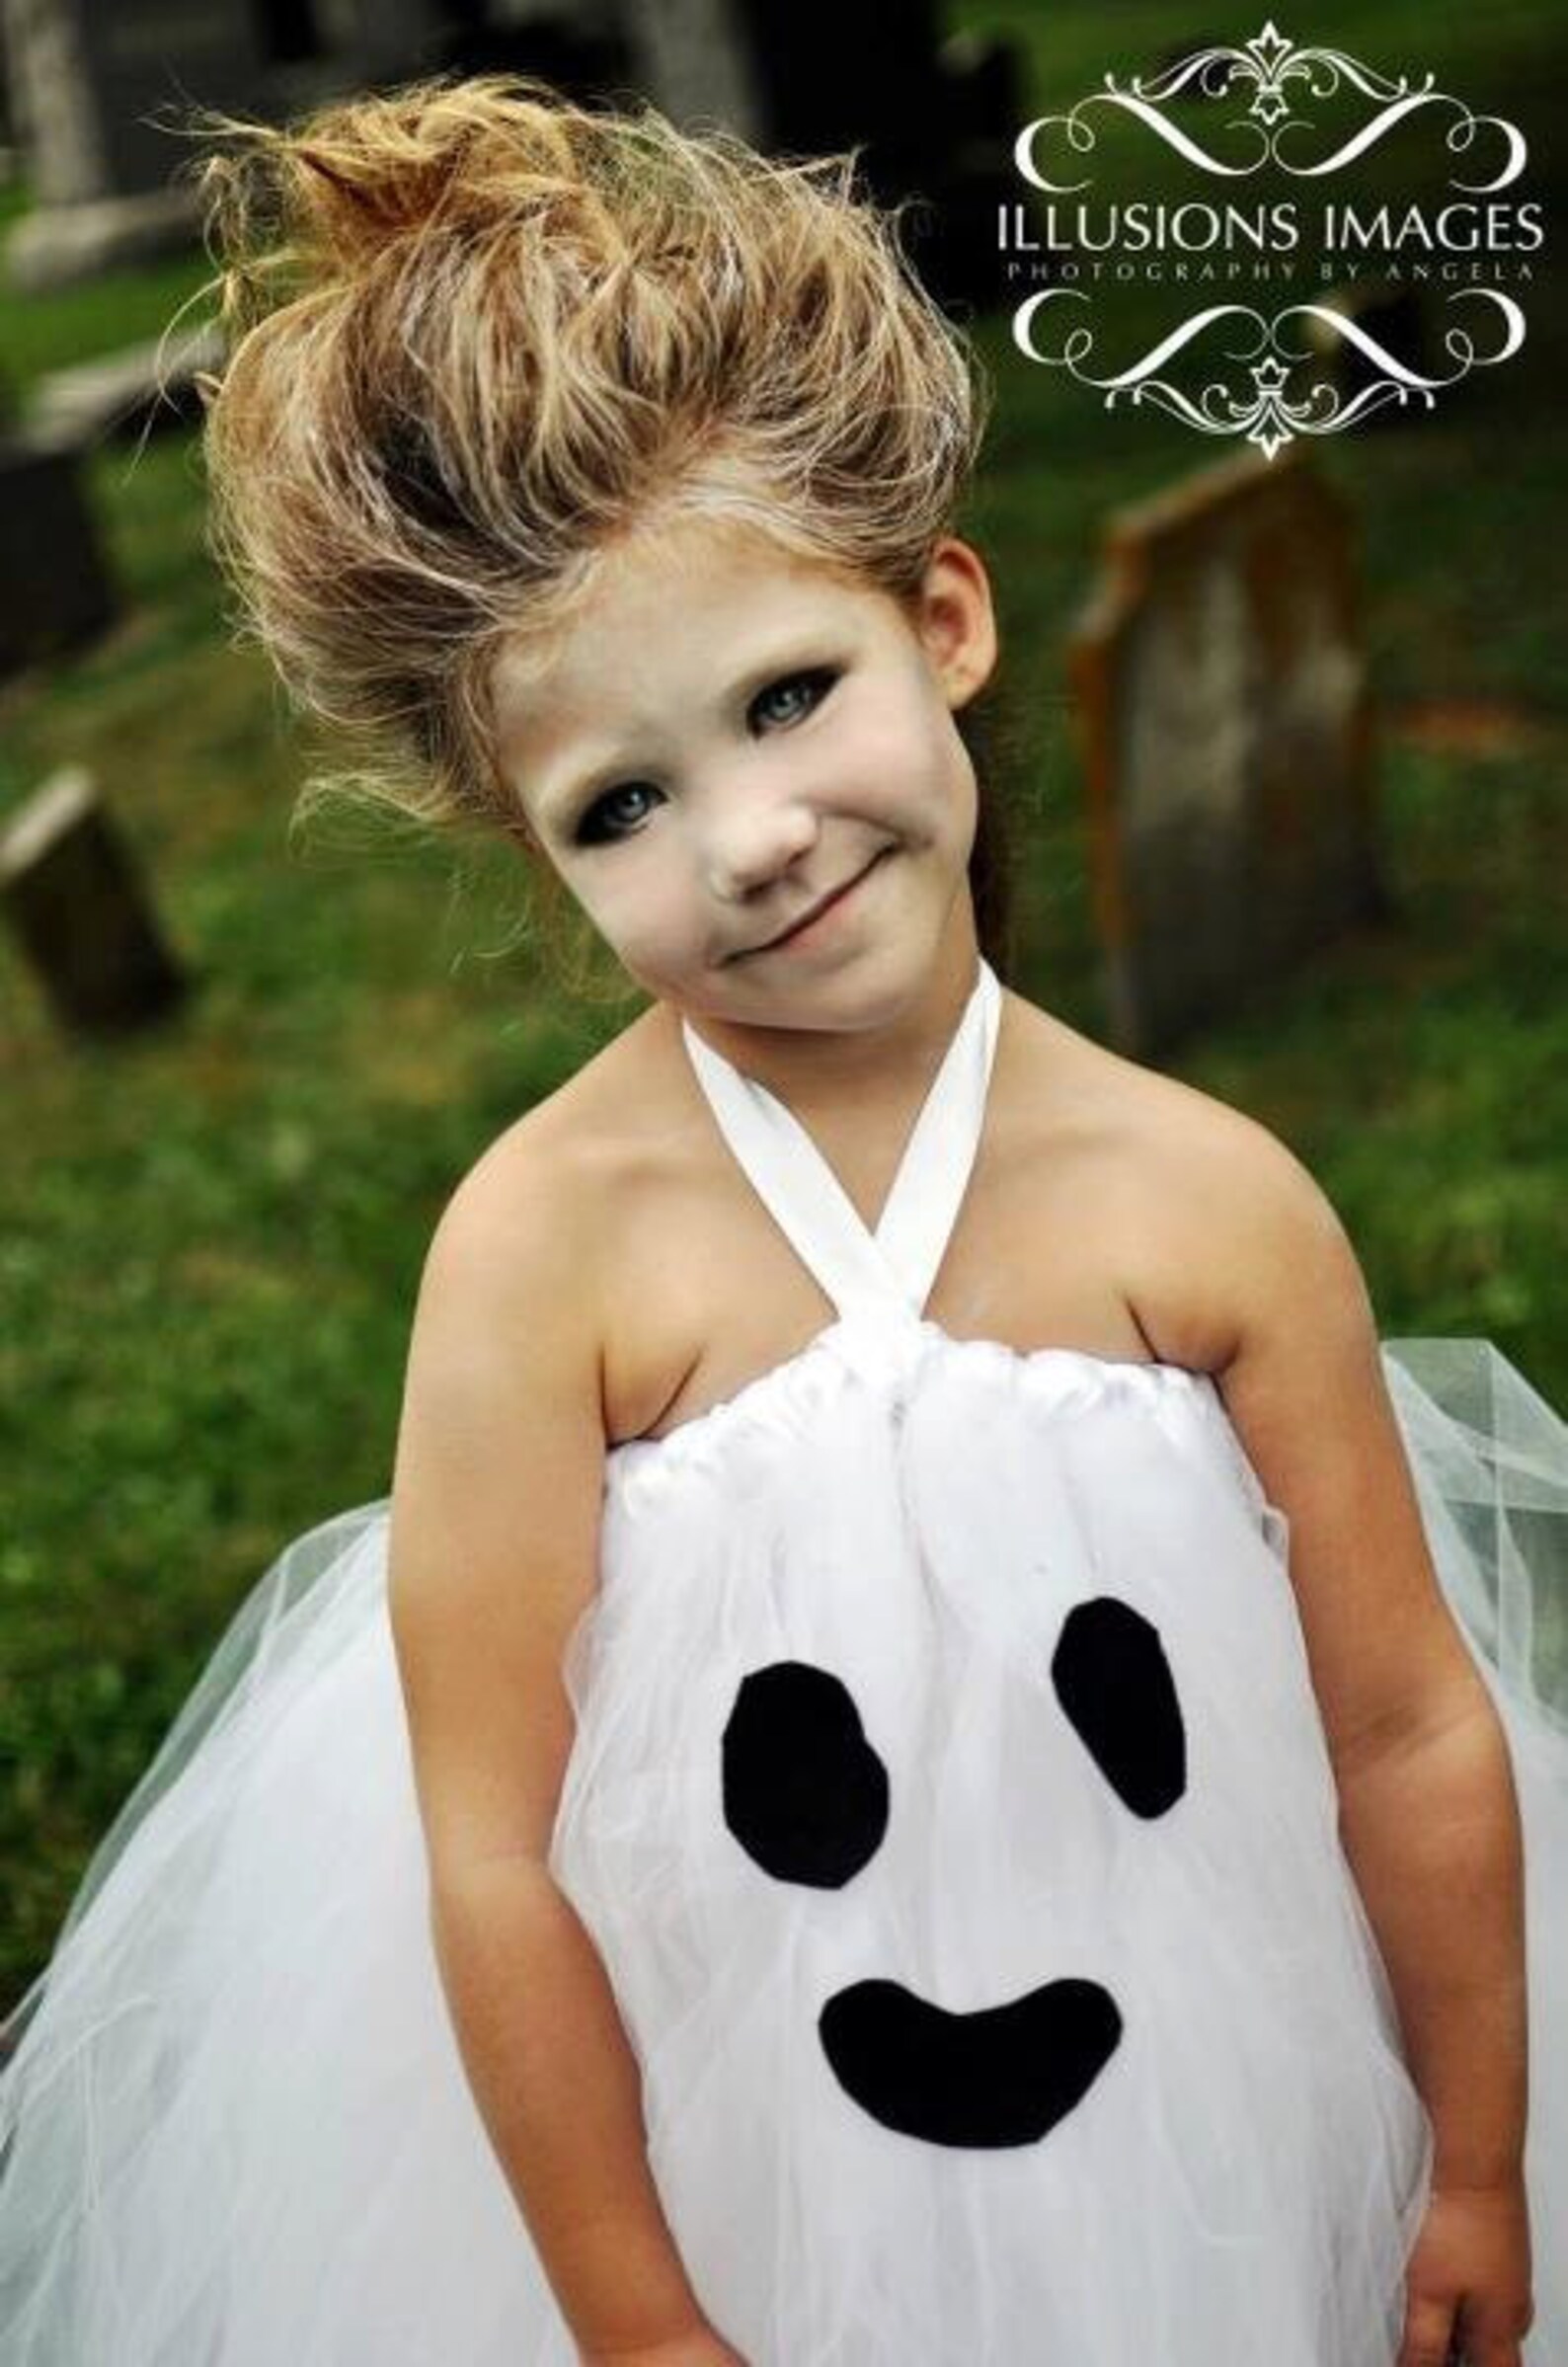 Ghost Tutu Dress OTT Boutique OOC Pageant Wear Halloween | Etsy